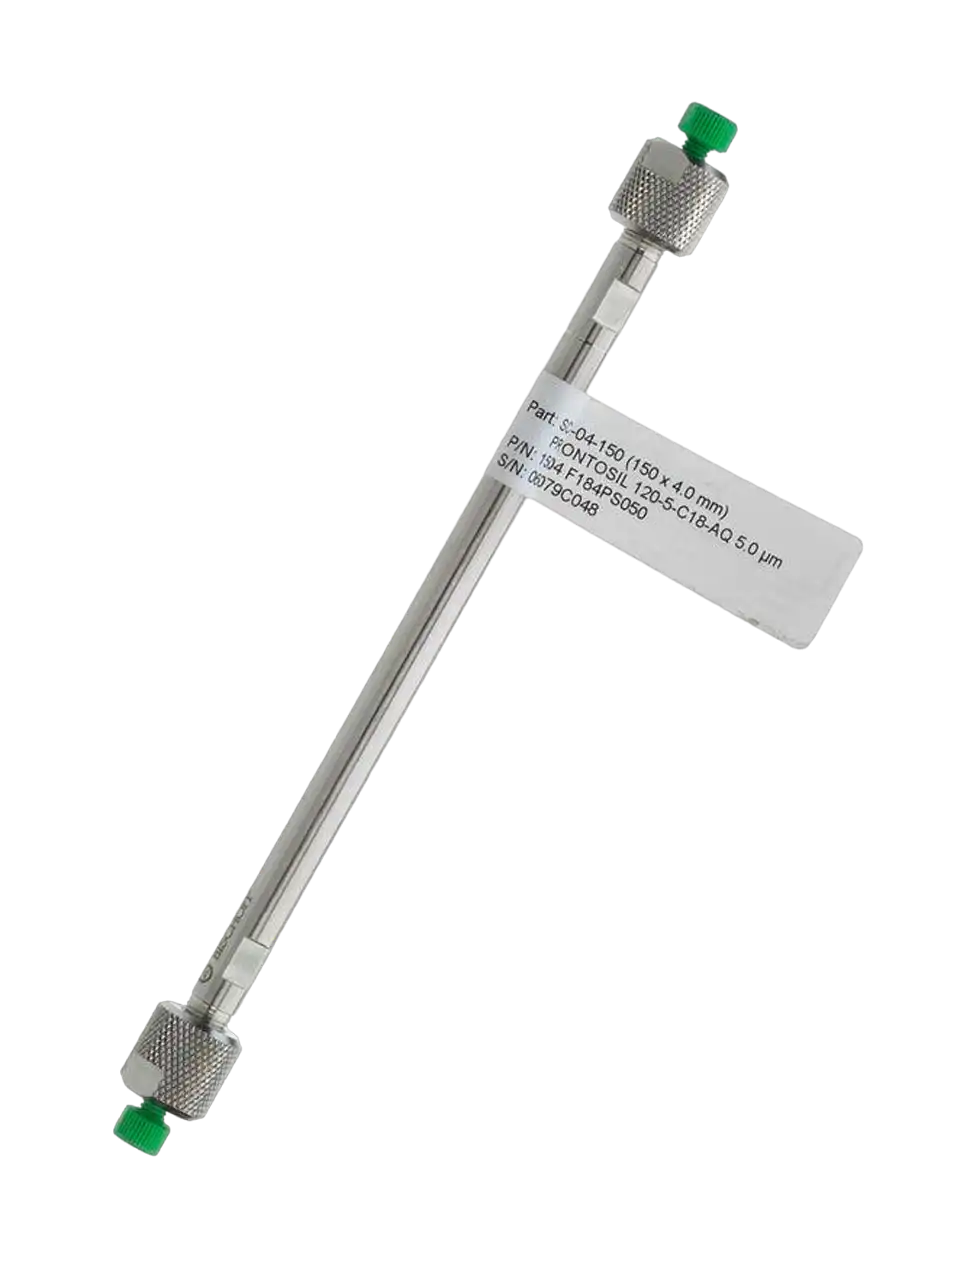 ProntoSIL HPLC Column, 60-5-C18H, Reversed Phase, USP: L1, End-Capped: Yes, 4,6 x 250 mm, 5 µm, 60 Å